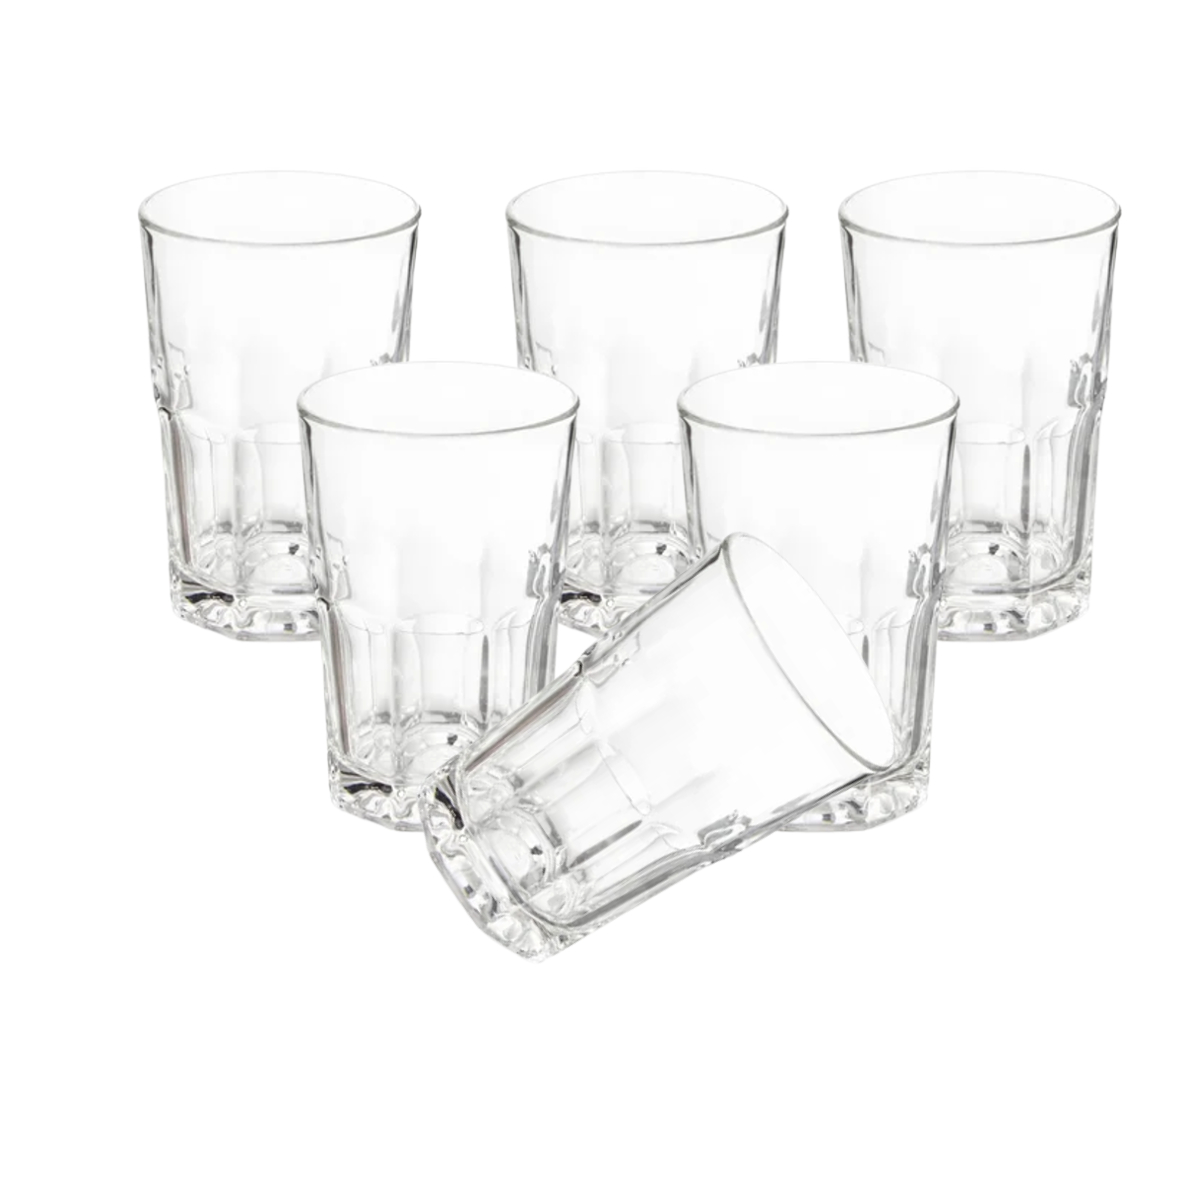 Mejores vasos de cristal que puedes comprar ahora mismo